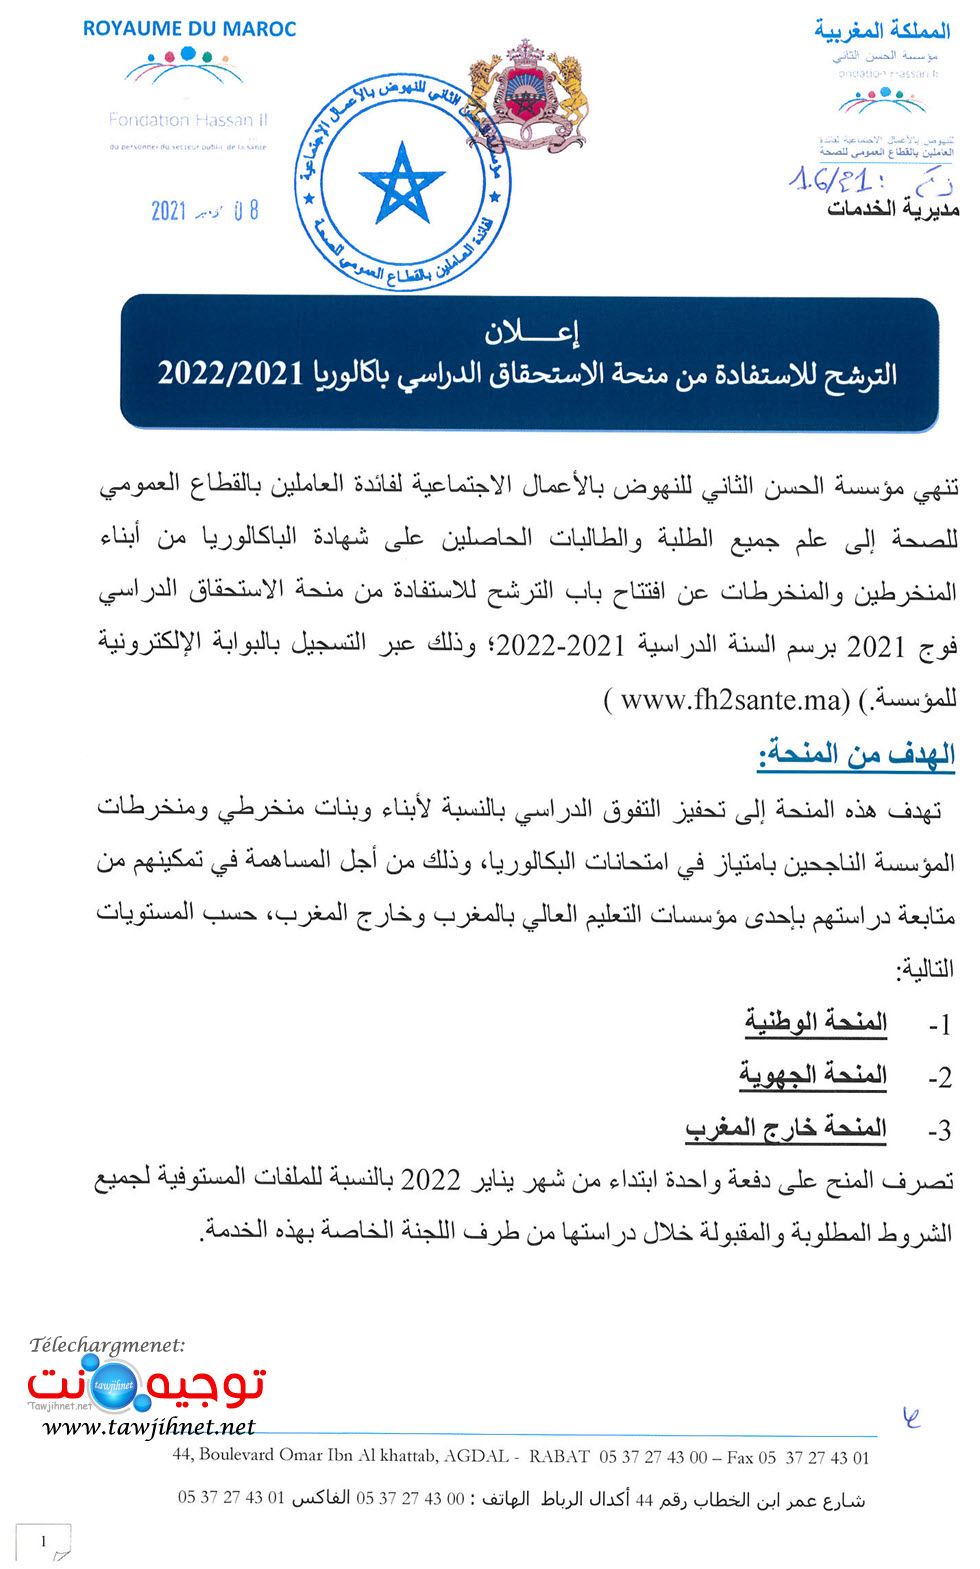 Bourse-FH2sante-2021-Fondation-Hassan II-oeuvres sociales-santé_Page_1.jpg